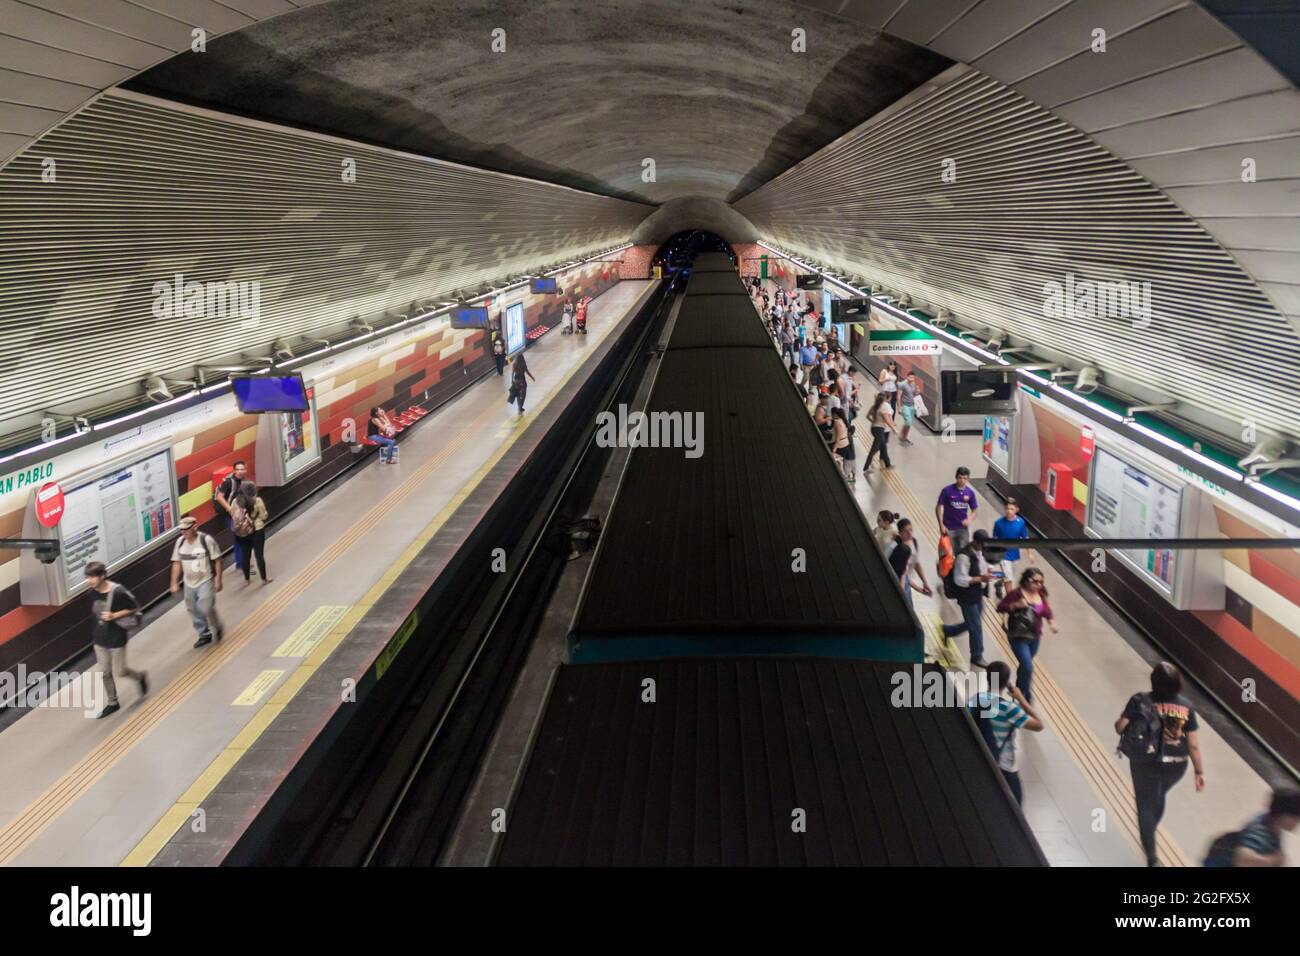 SANTIAGO, CILE - 28 MARZO 2015: Vista di una stazione della metropolitana a Santiago del Cile Foto Stock